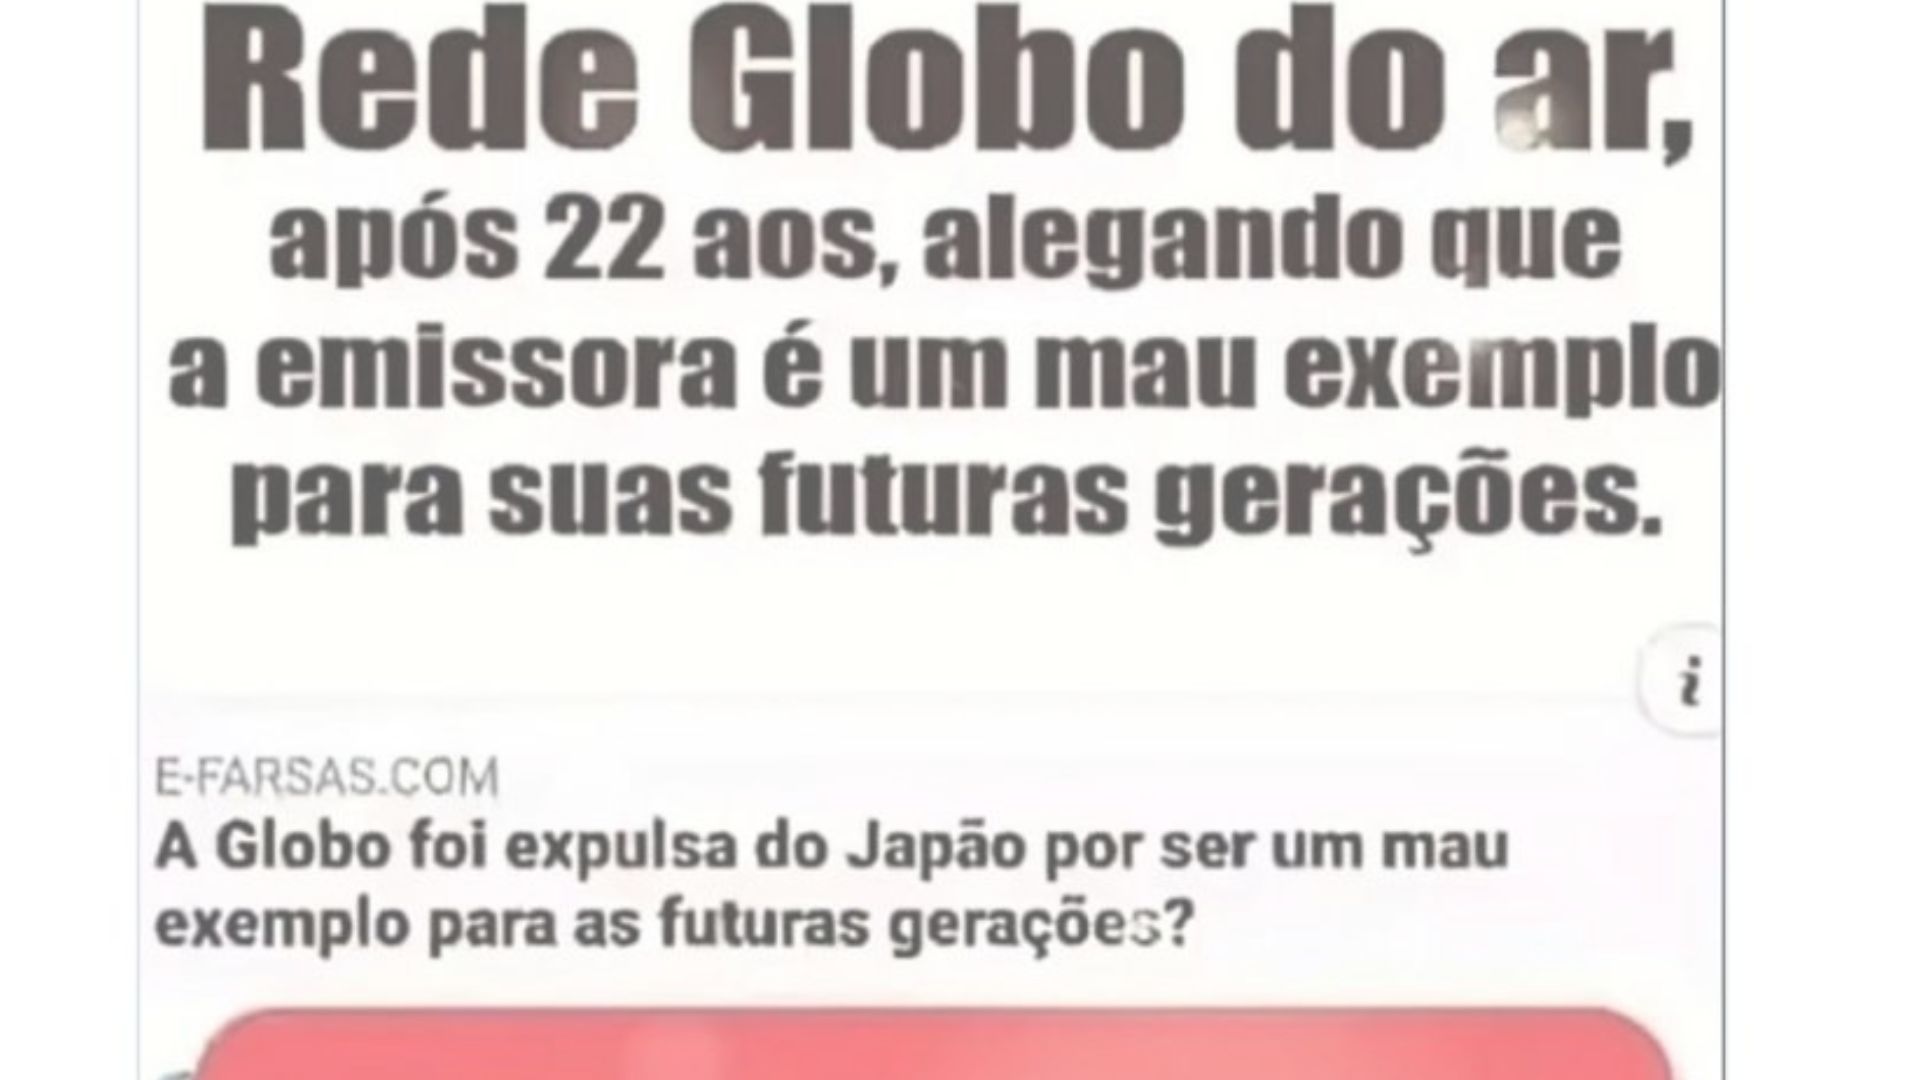 Após 22 anos, Globo deixará de ter sua programação transmitida no Japão